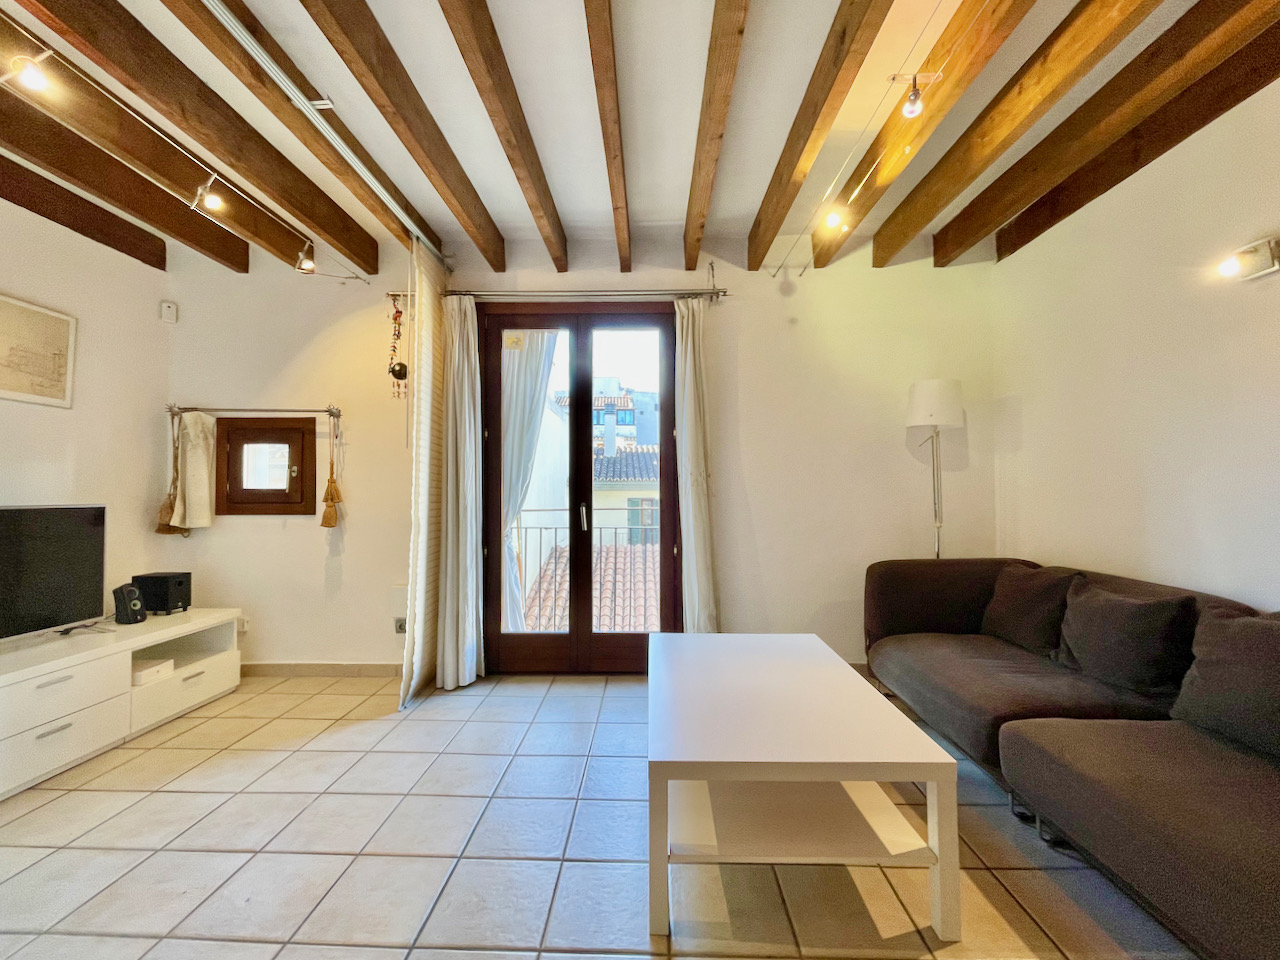 Fantastisches Apartment mit zwei Schlafzimmern in Sa Gerreria, der Altstadt von Palma.